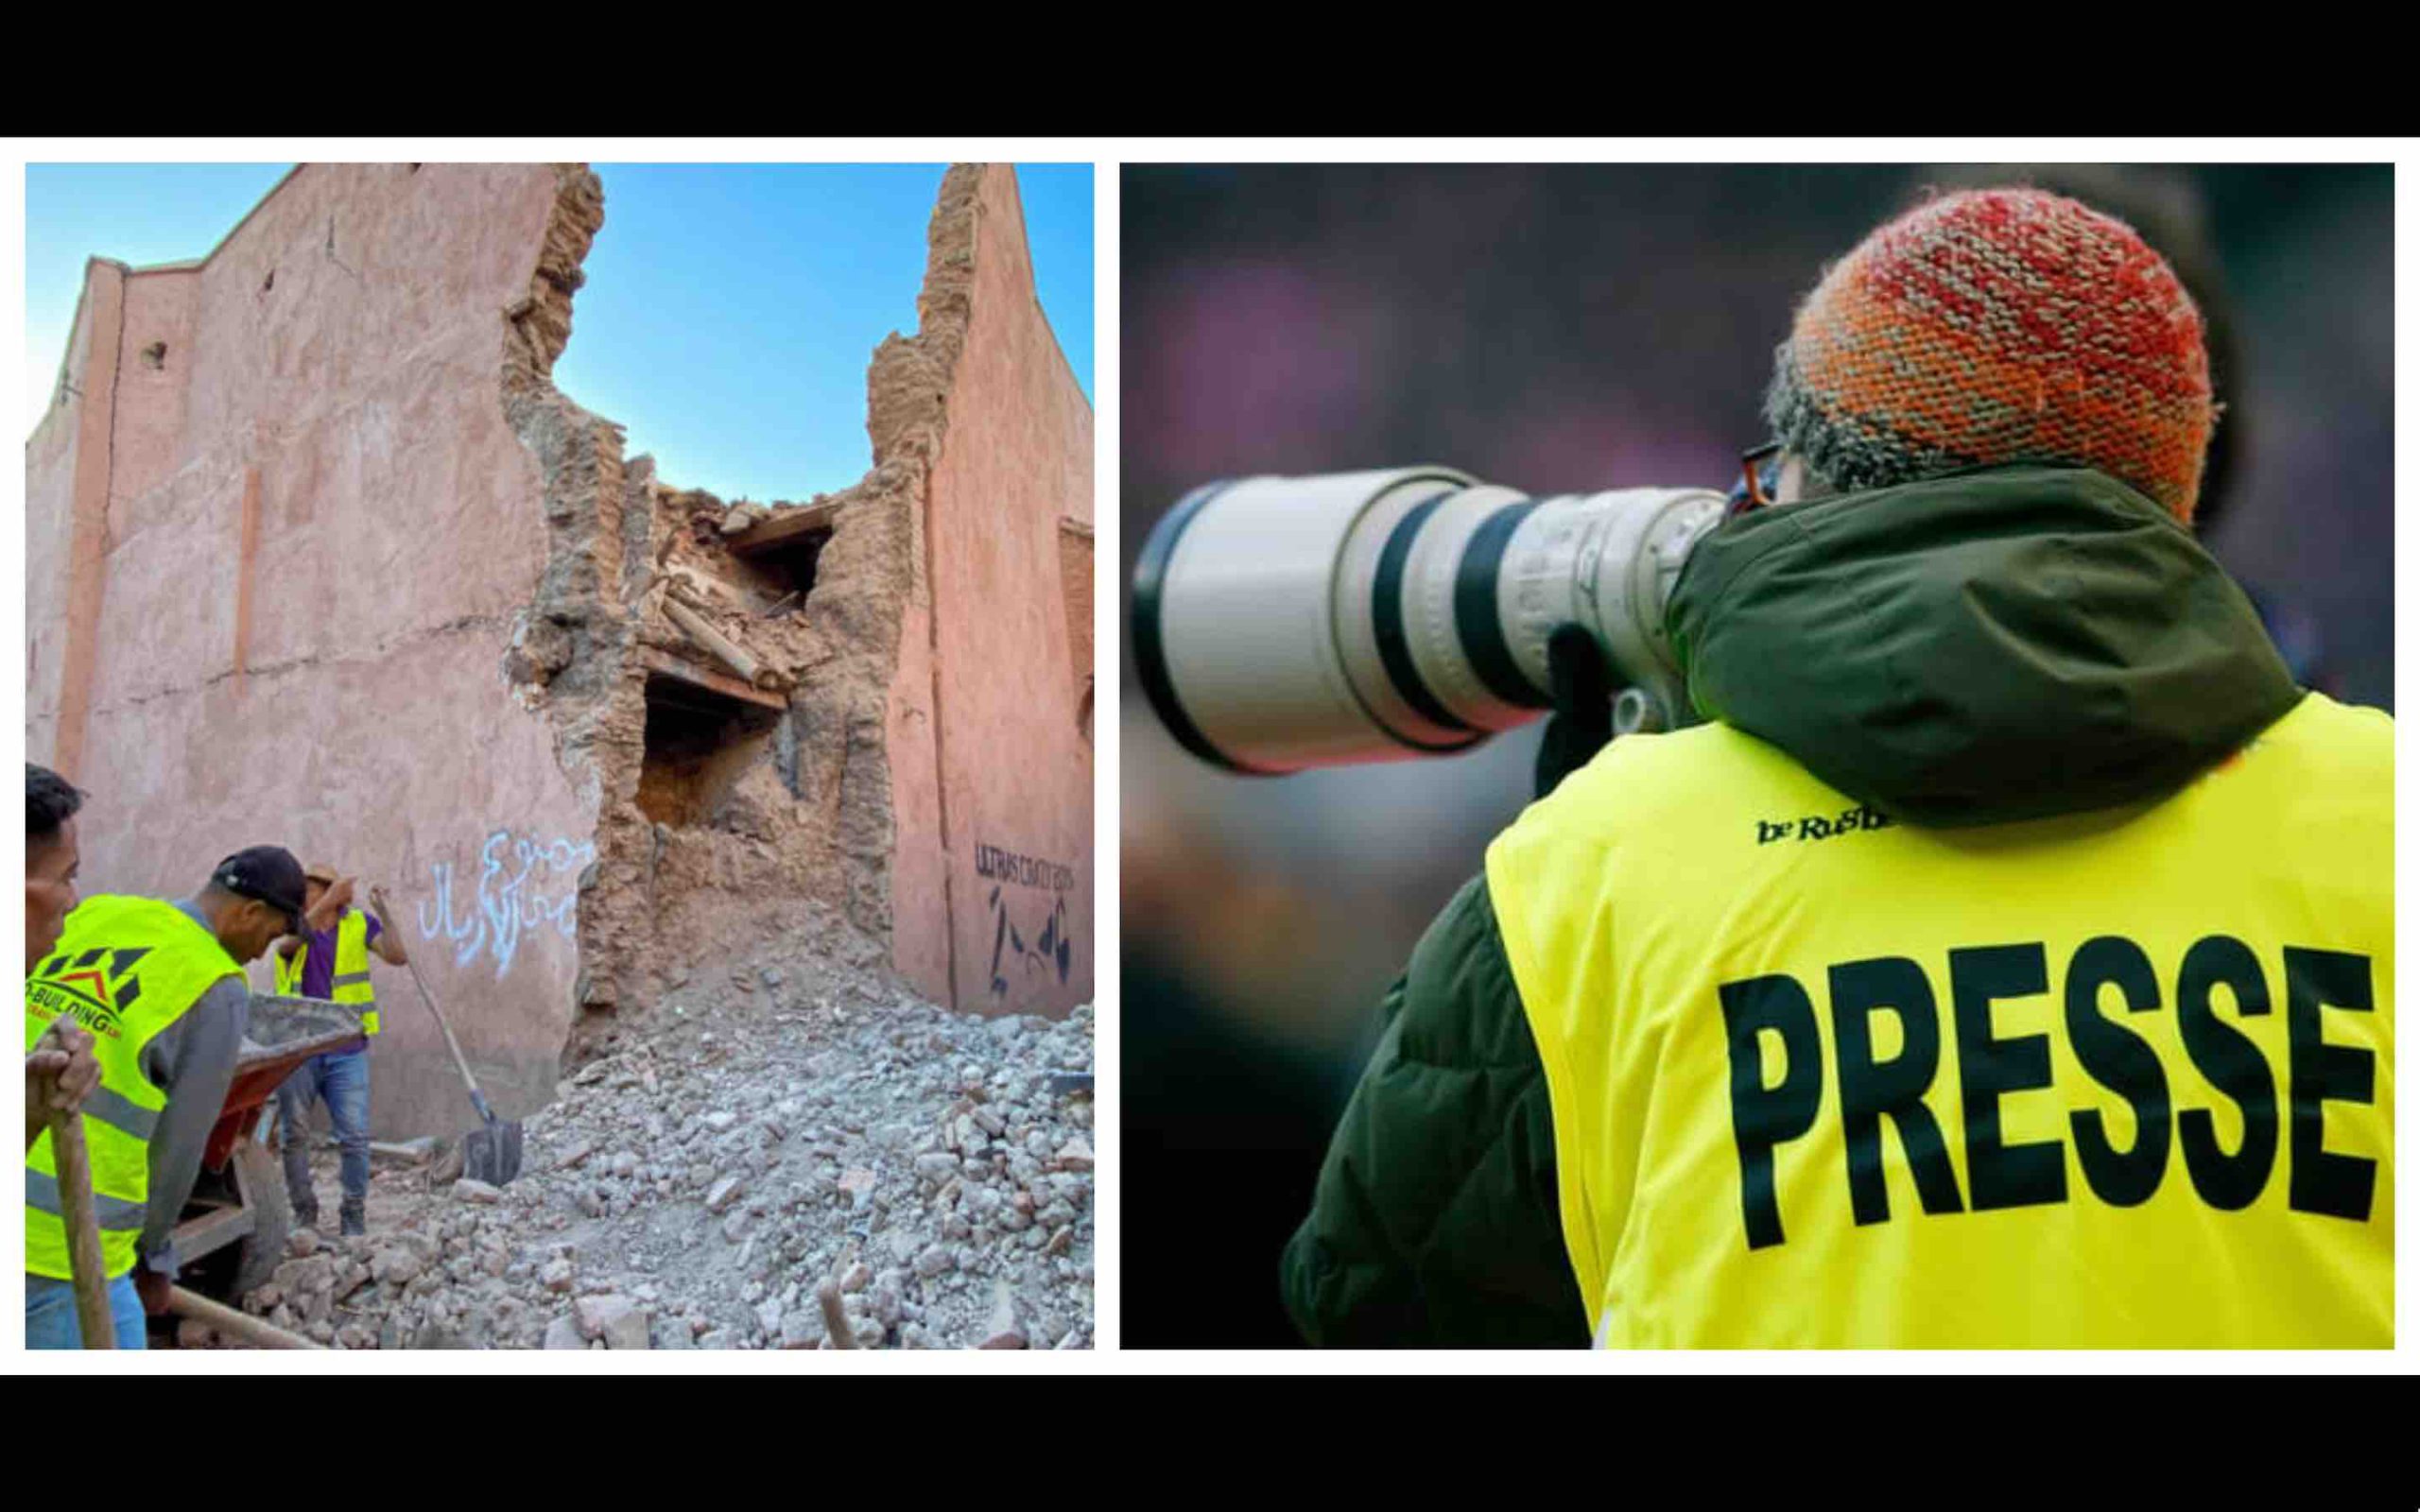 photographe presse séisme tremblement de terre Maroc